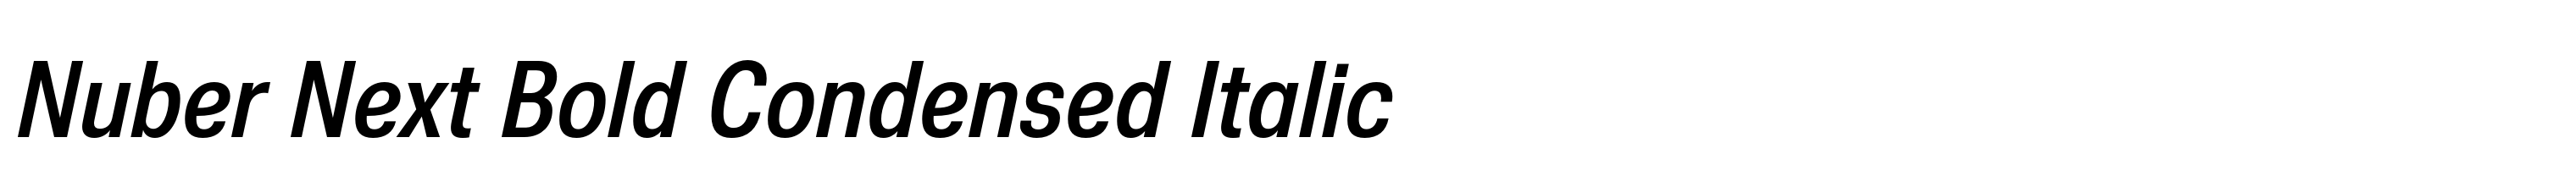 Nuber Next Bold Condensed Italic